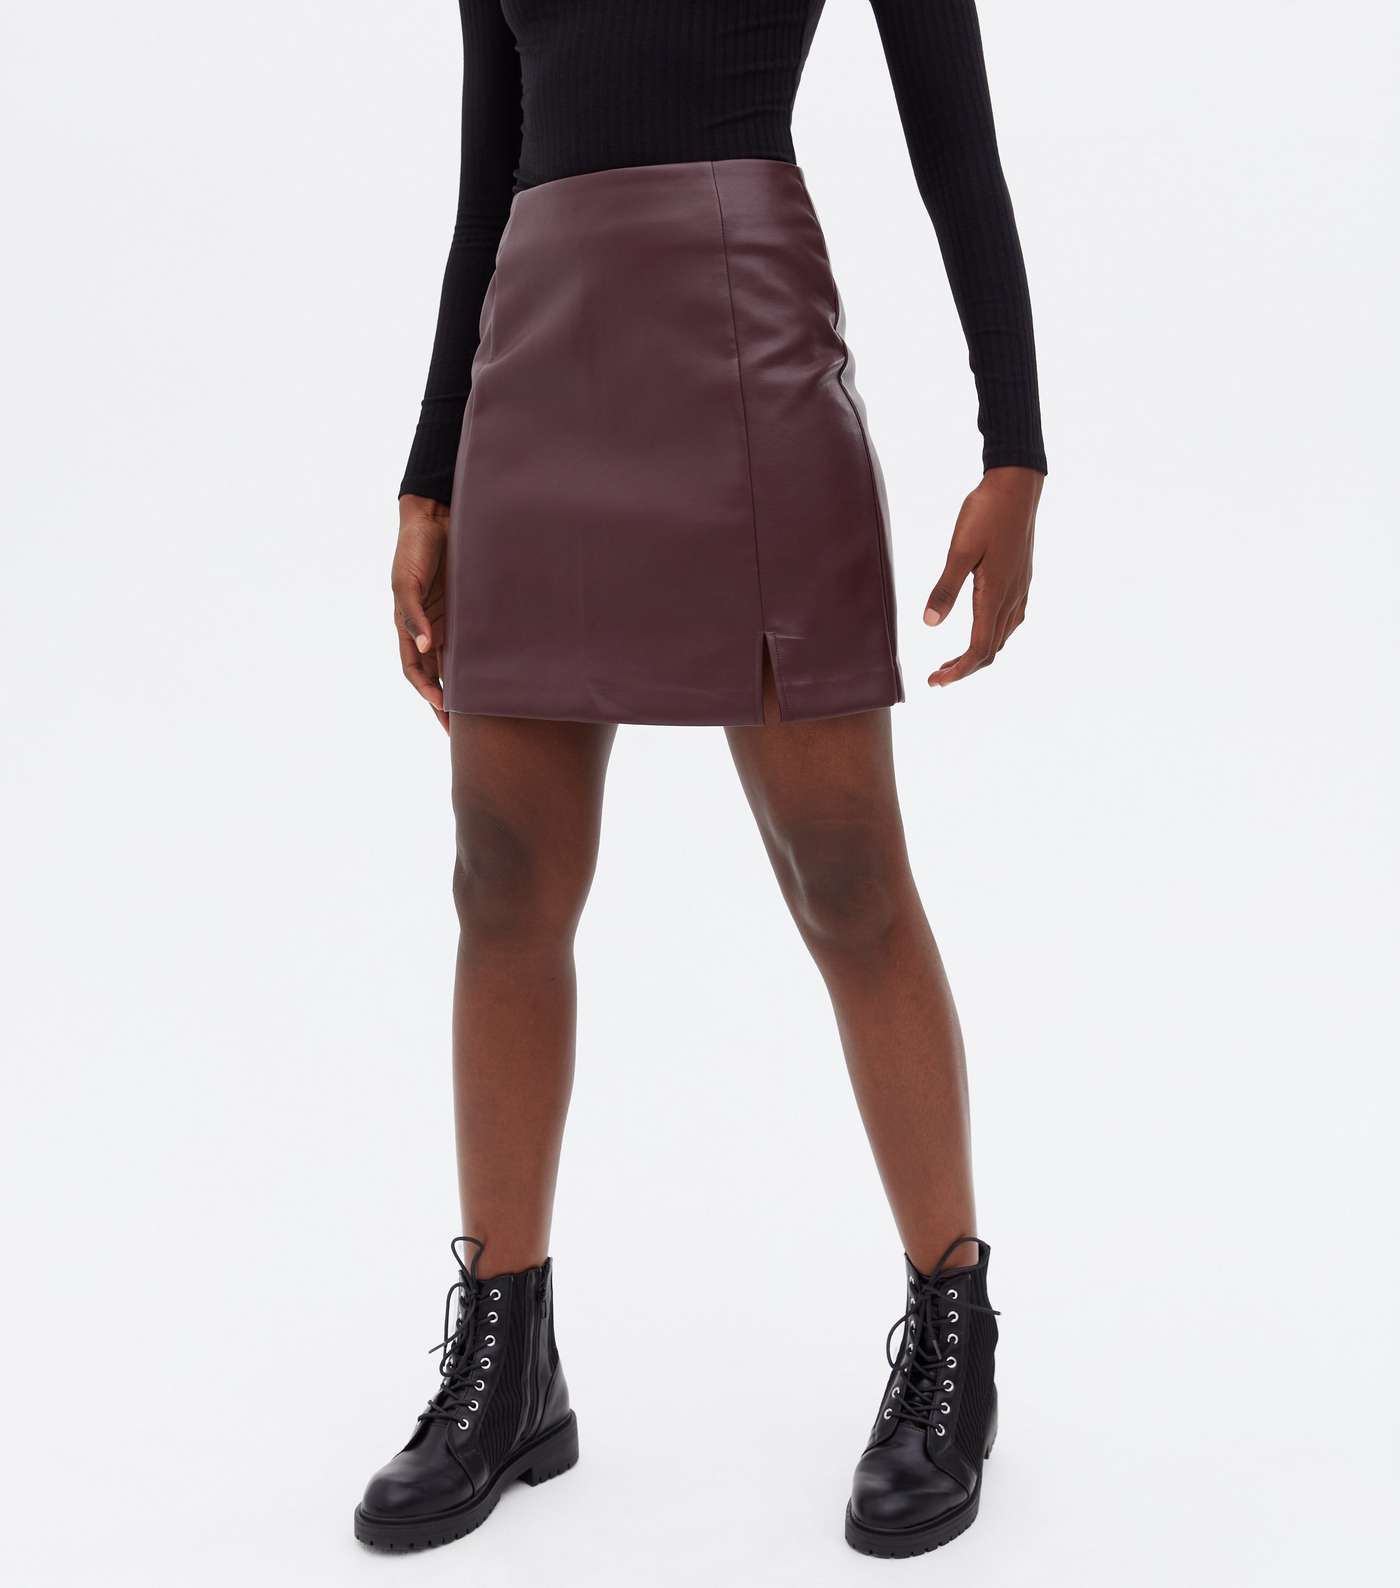 Tall Burgundy Leather-Look Mini Skirt Image 2